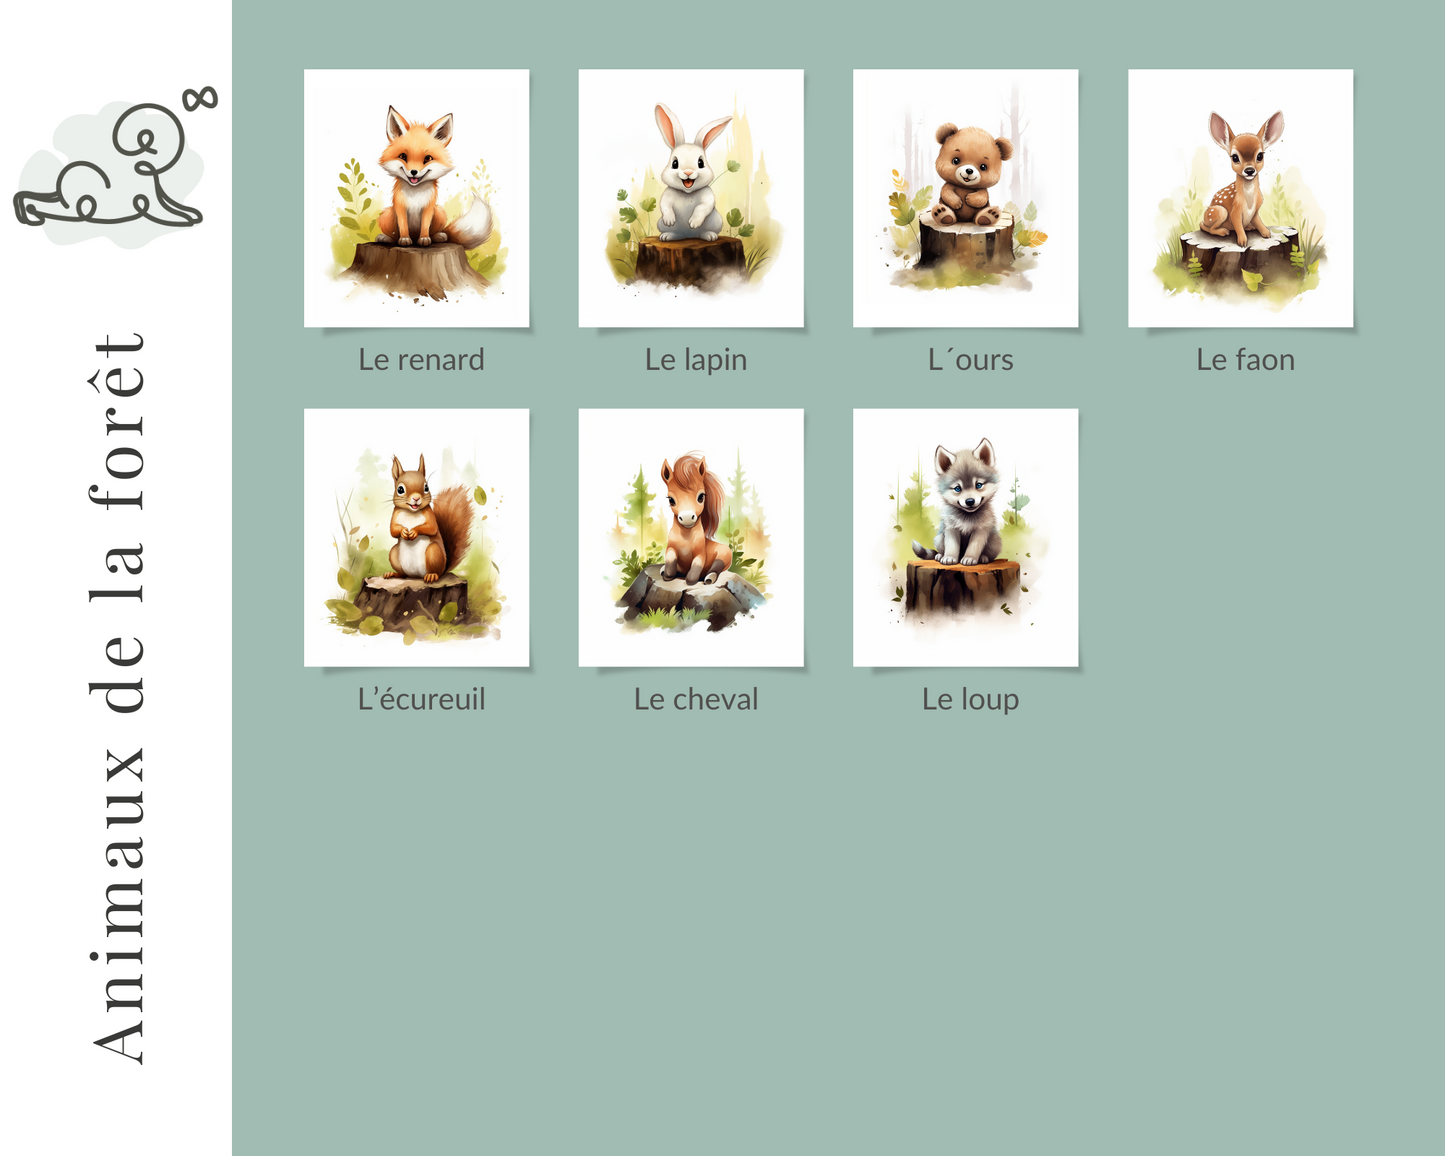 Illustration chambre enfant, Illustration chambre bébé, thème animaux de la forêt, renard, lapin, ourson, faon, écureuil, cheval, loup